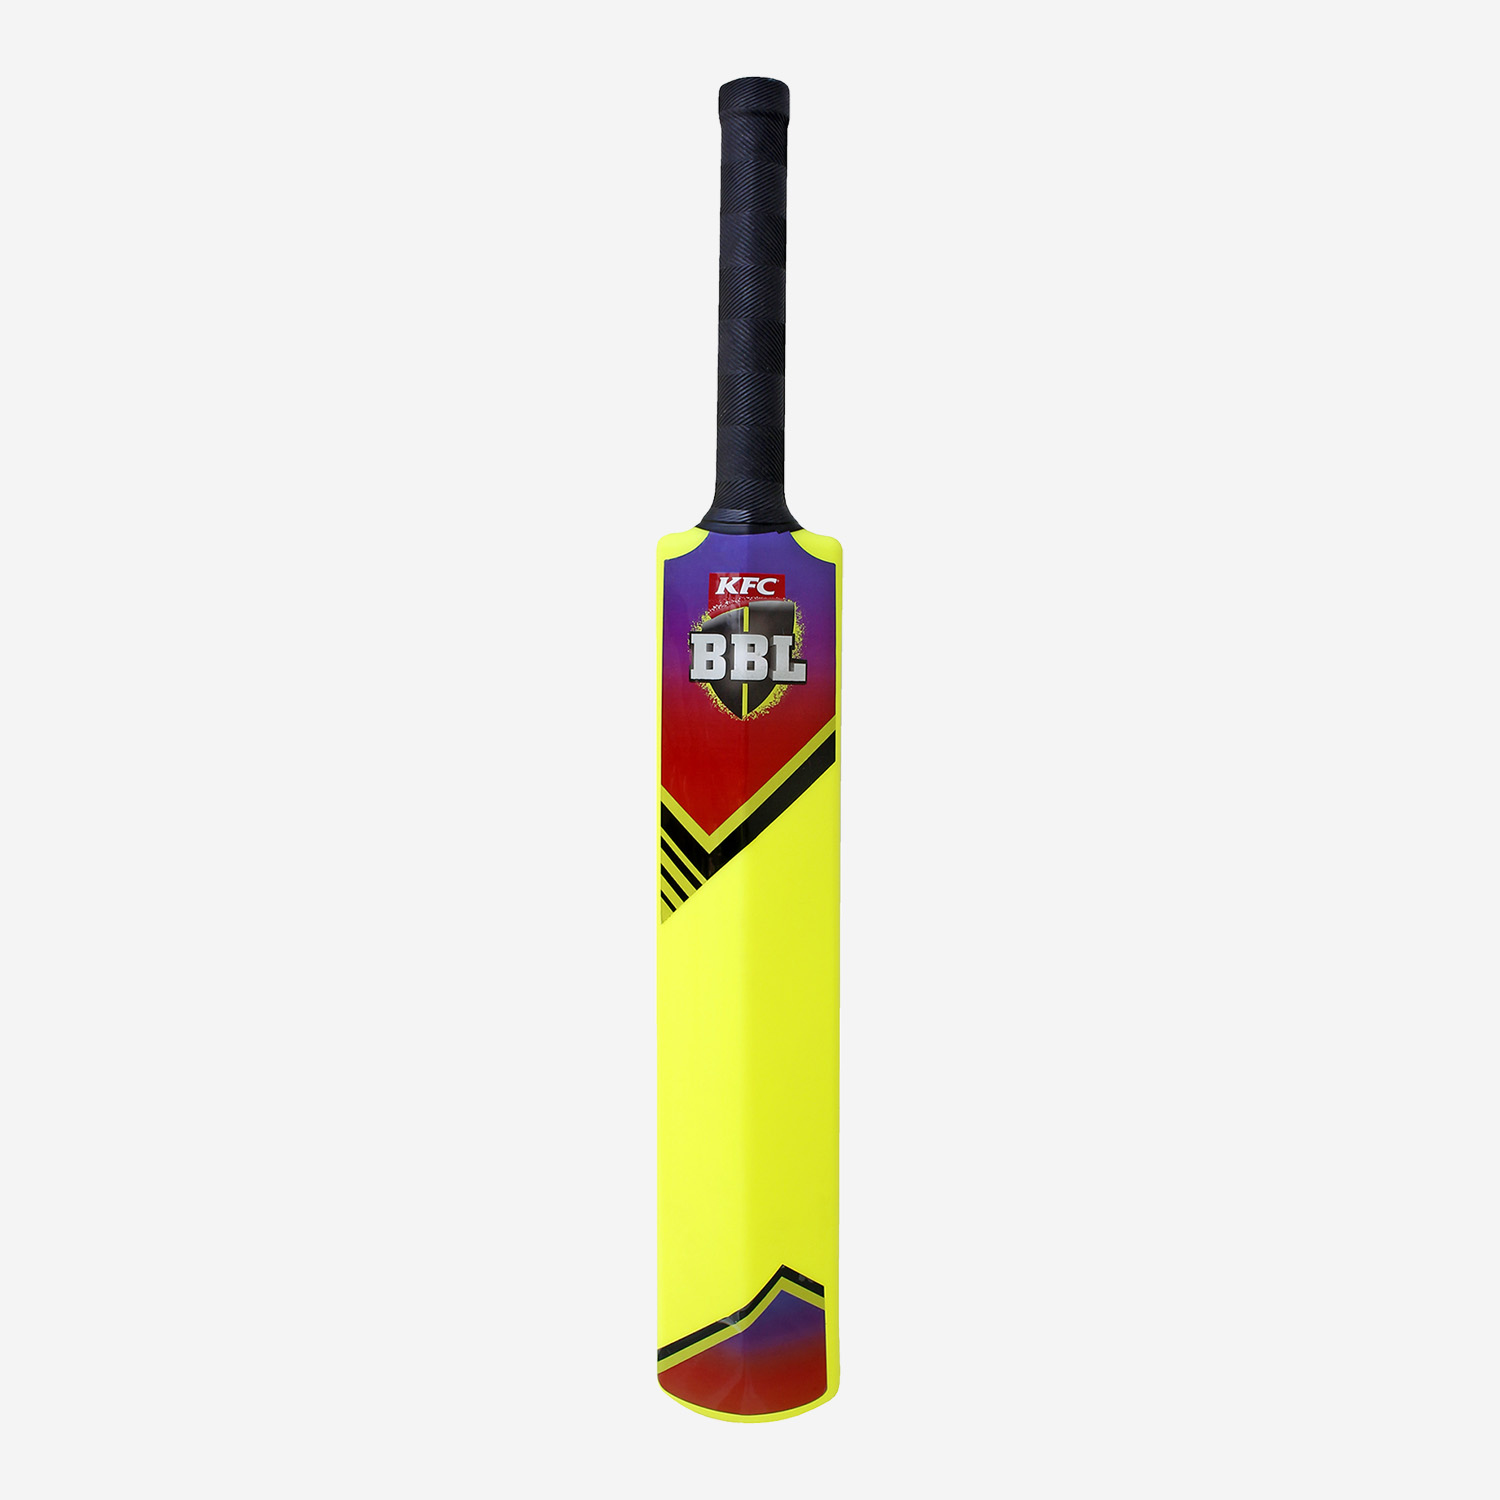 BBL plastic cricket bat